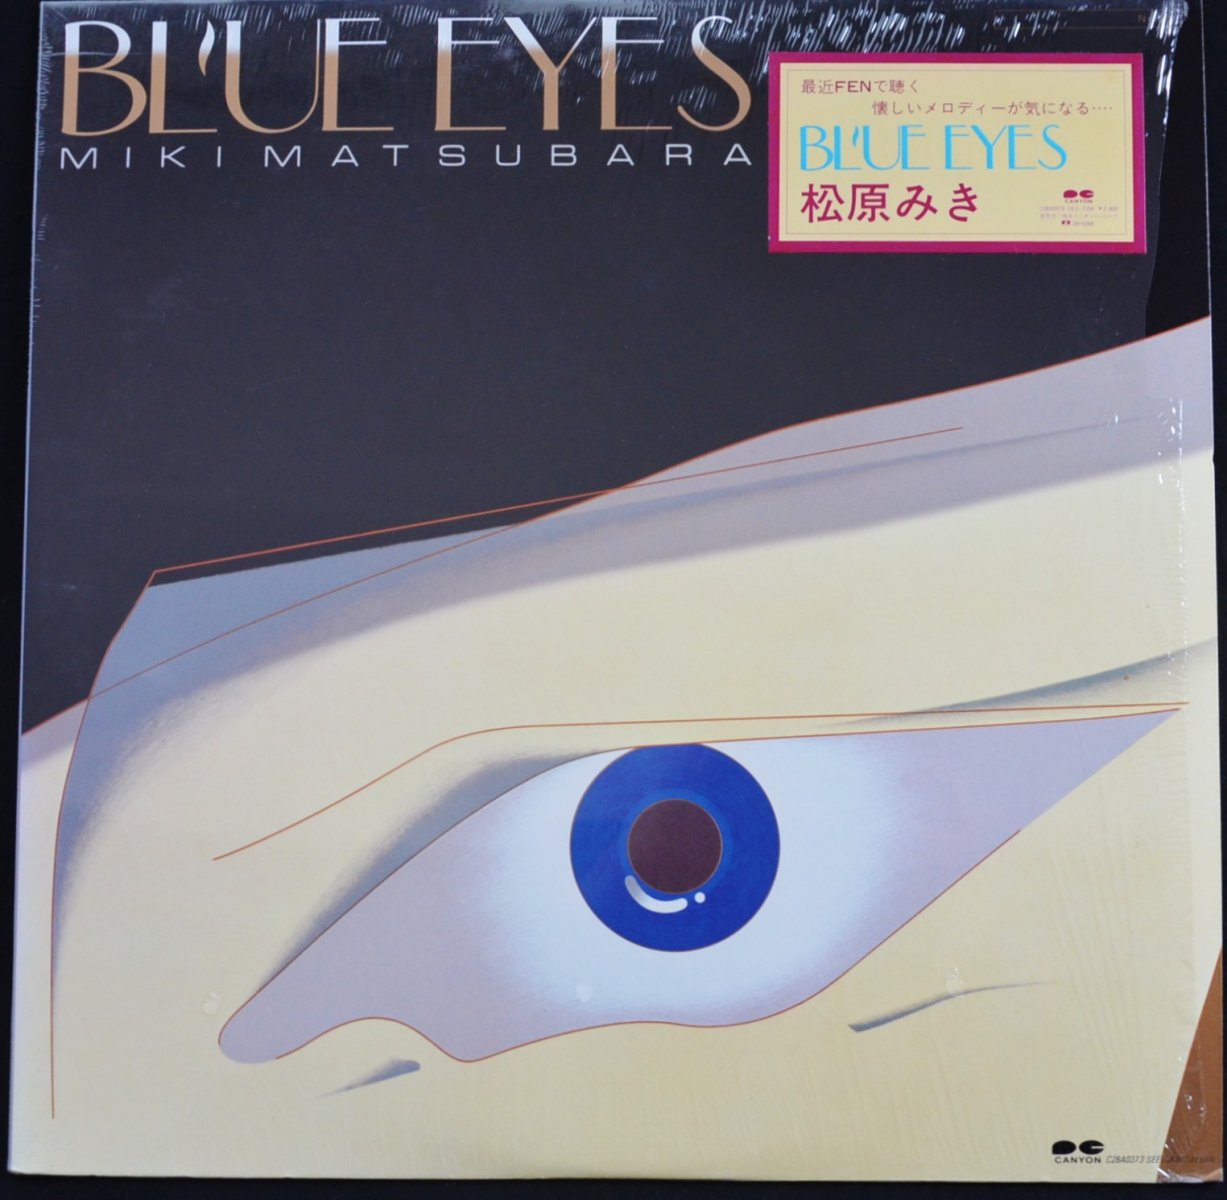 松原みき MIKI MATSUBARA (前田憲男 / NORIO MAEDA) / ブルーアイズ BLUE EYES (LP)